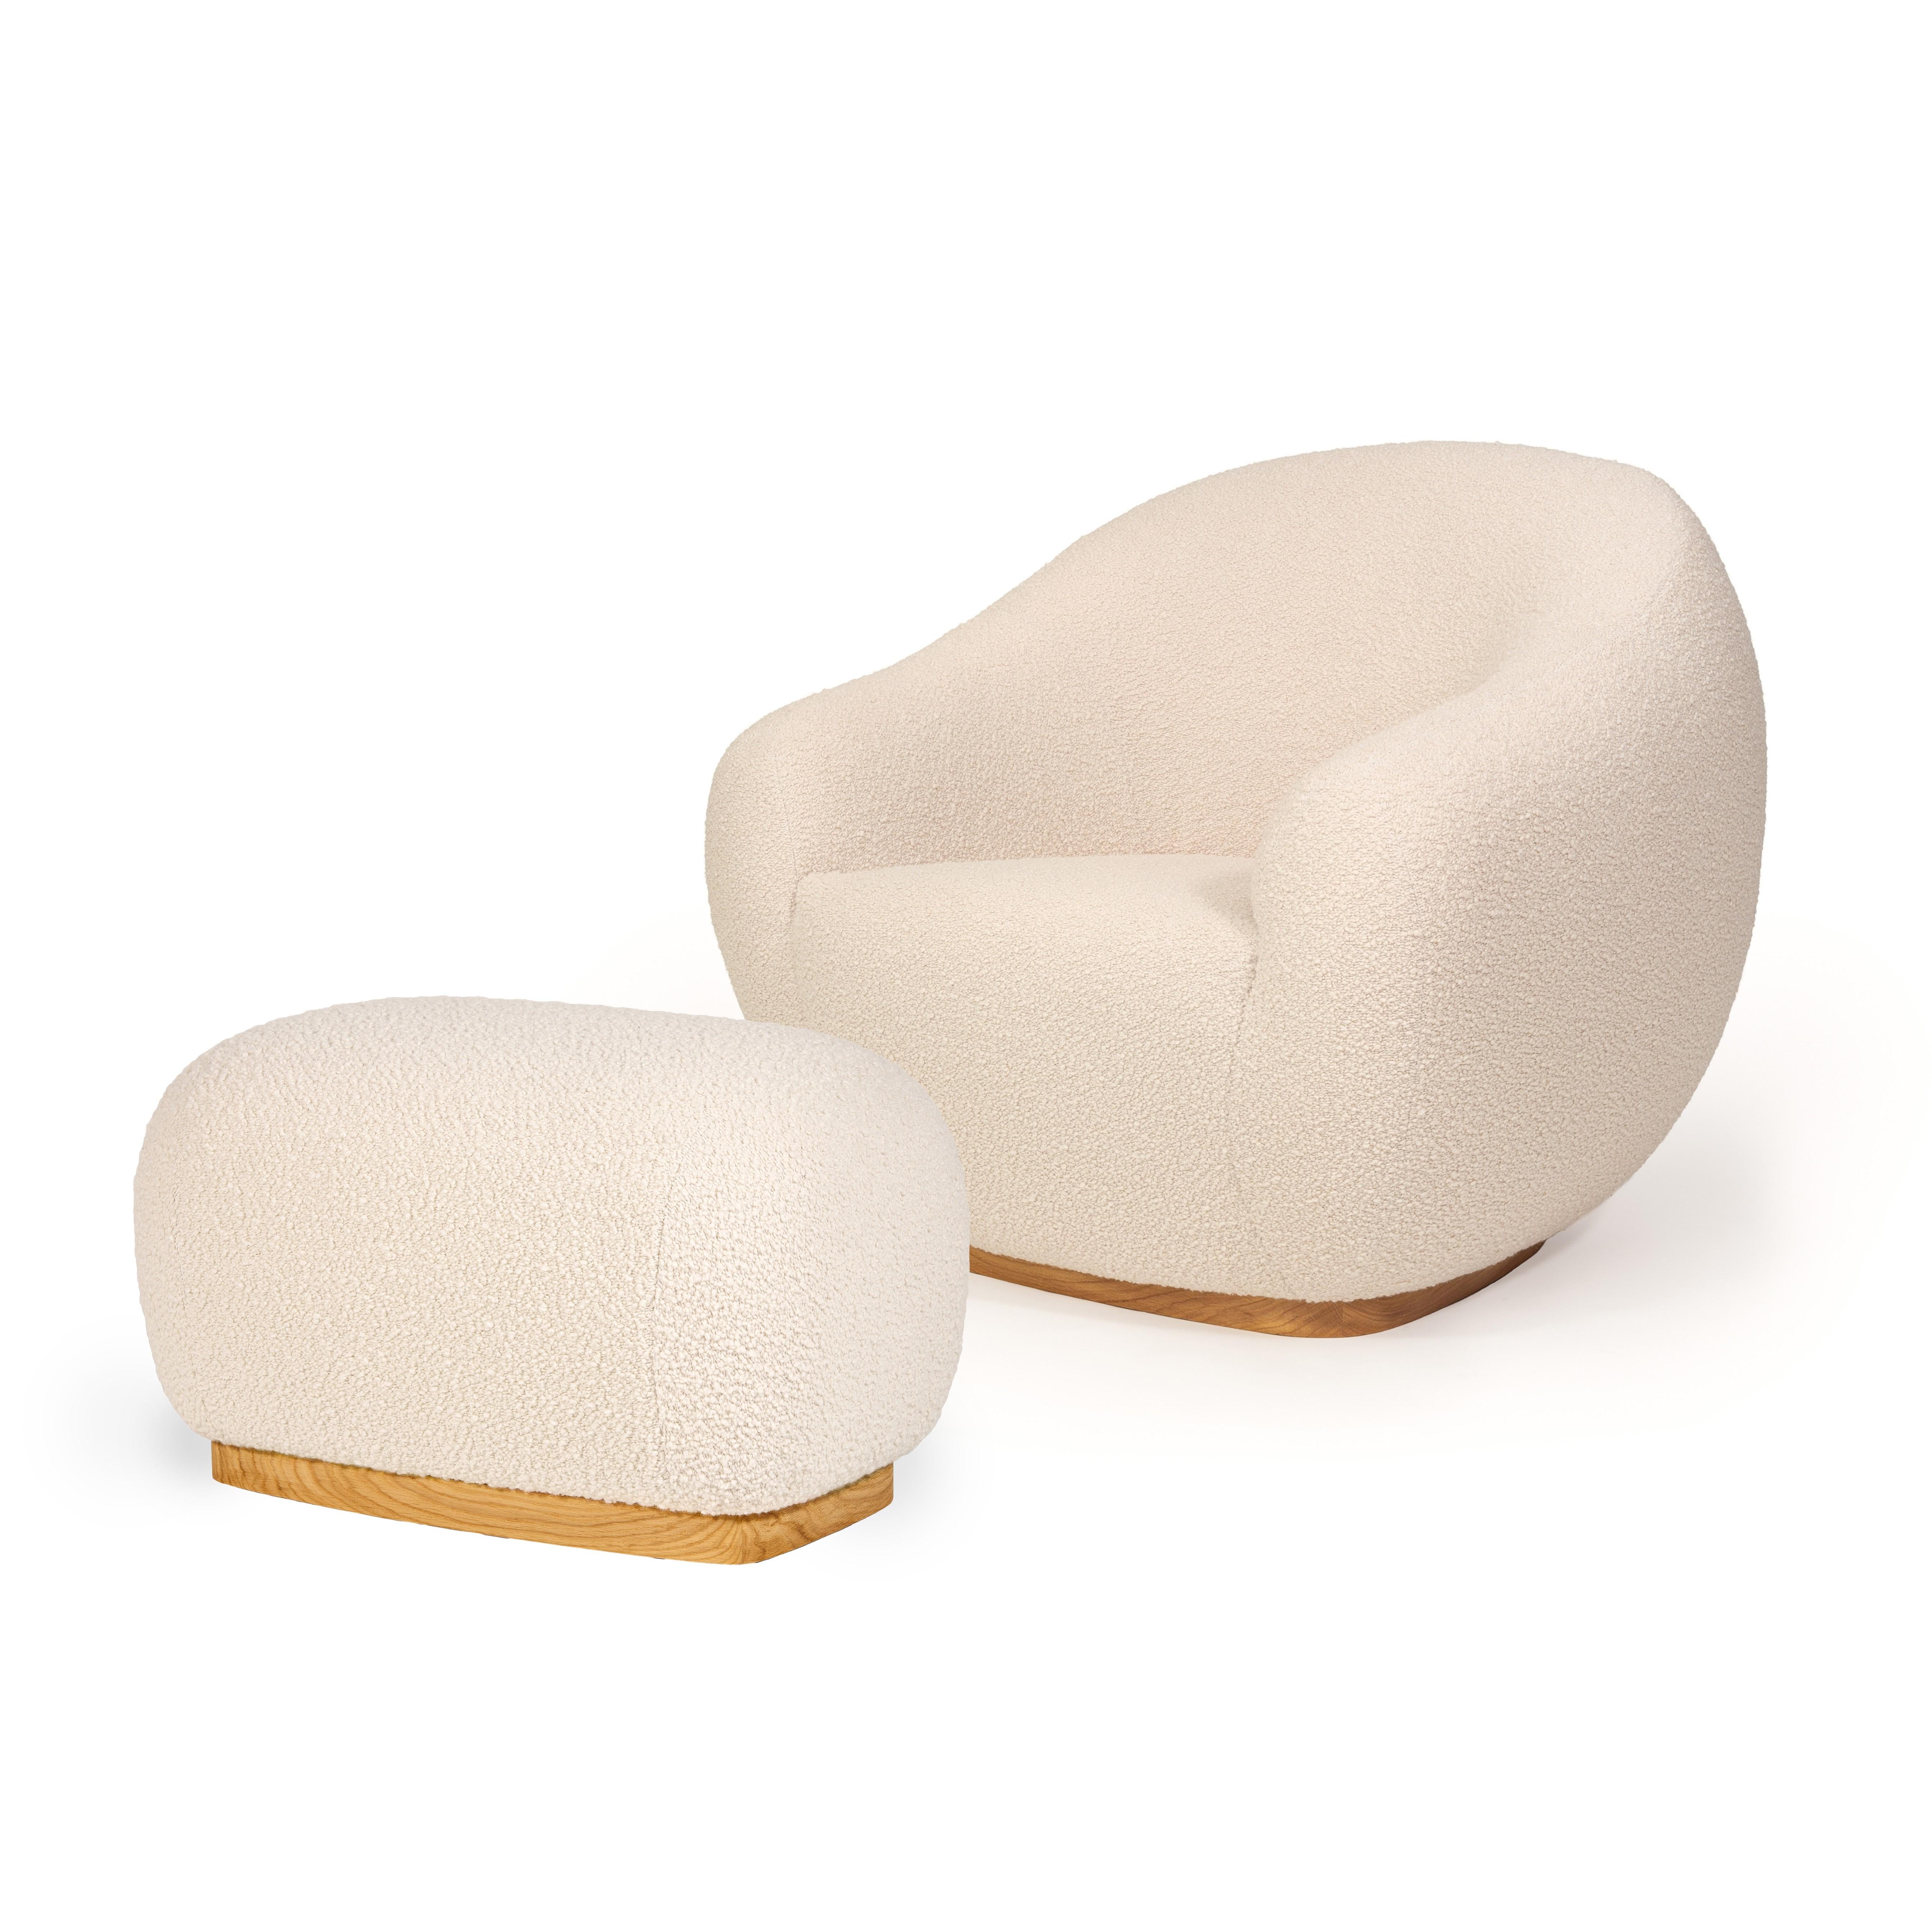 Lauréat du prix Gold Design dans la catégorie Design de mobilier au concours A'Design Award 2021-2022

Le fauteuil et le tabouret Niemeyer II portent le nom de l'architecte brésilien Oscar Niemeyer, dont l'architecture s'est répandue comme une